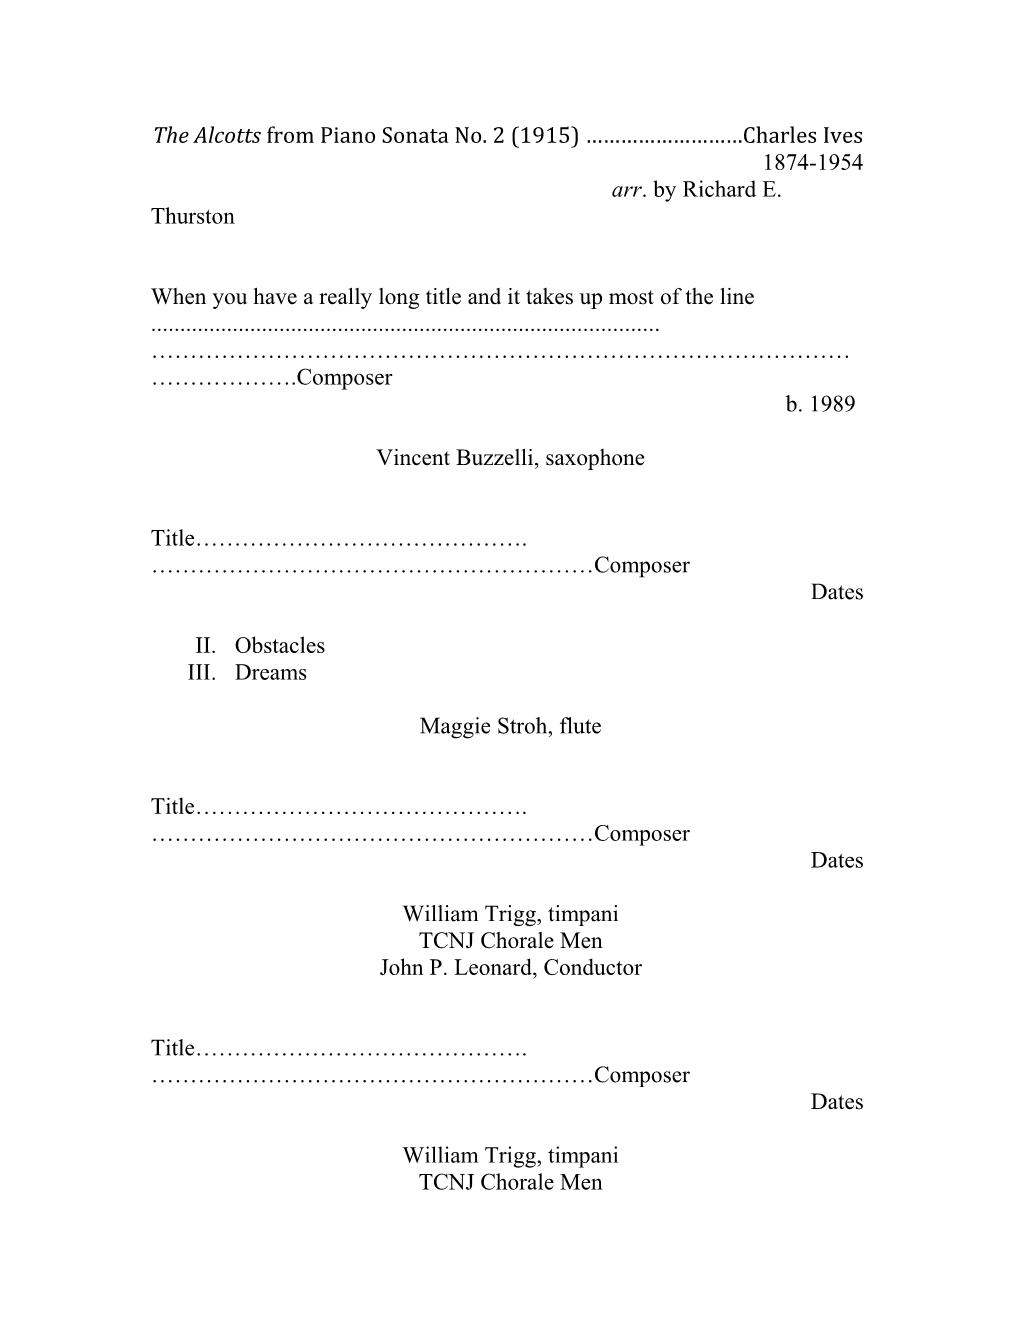 The Alcottsfrom Piano Sonata No. 2 (1915) Charles Ives